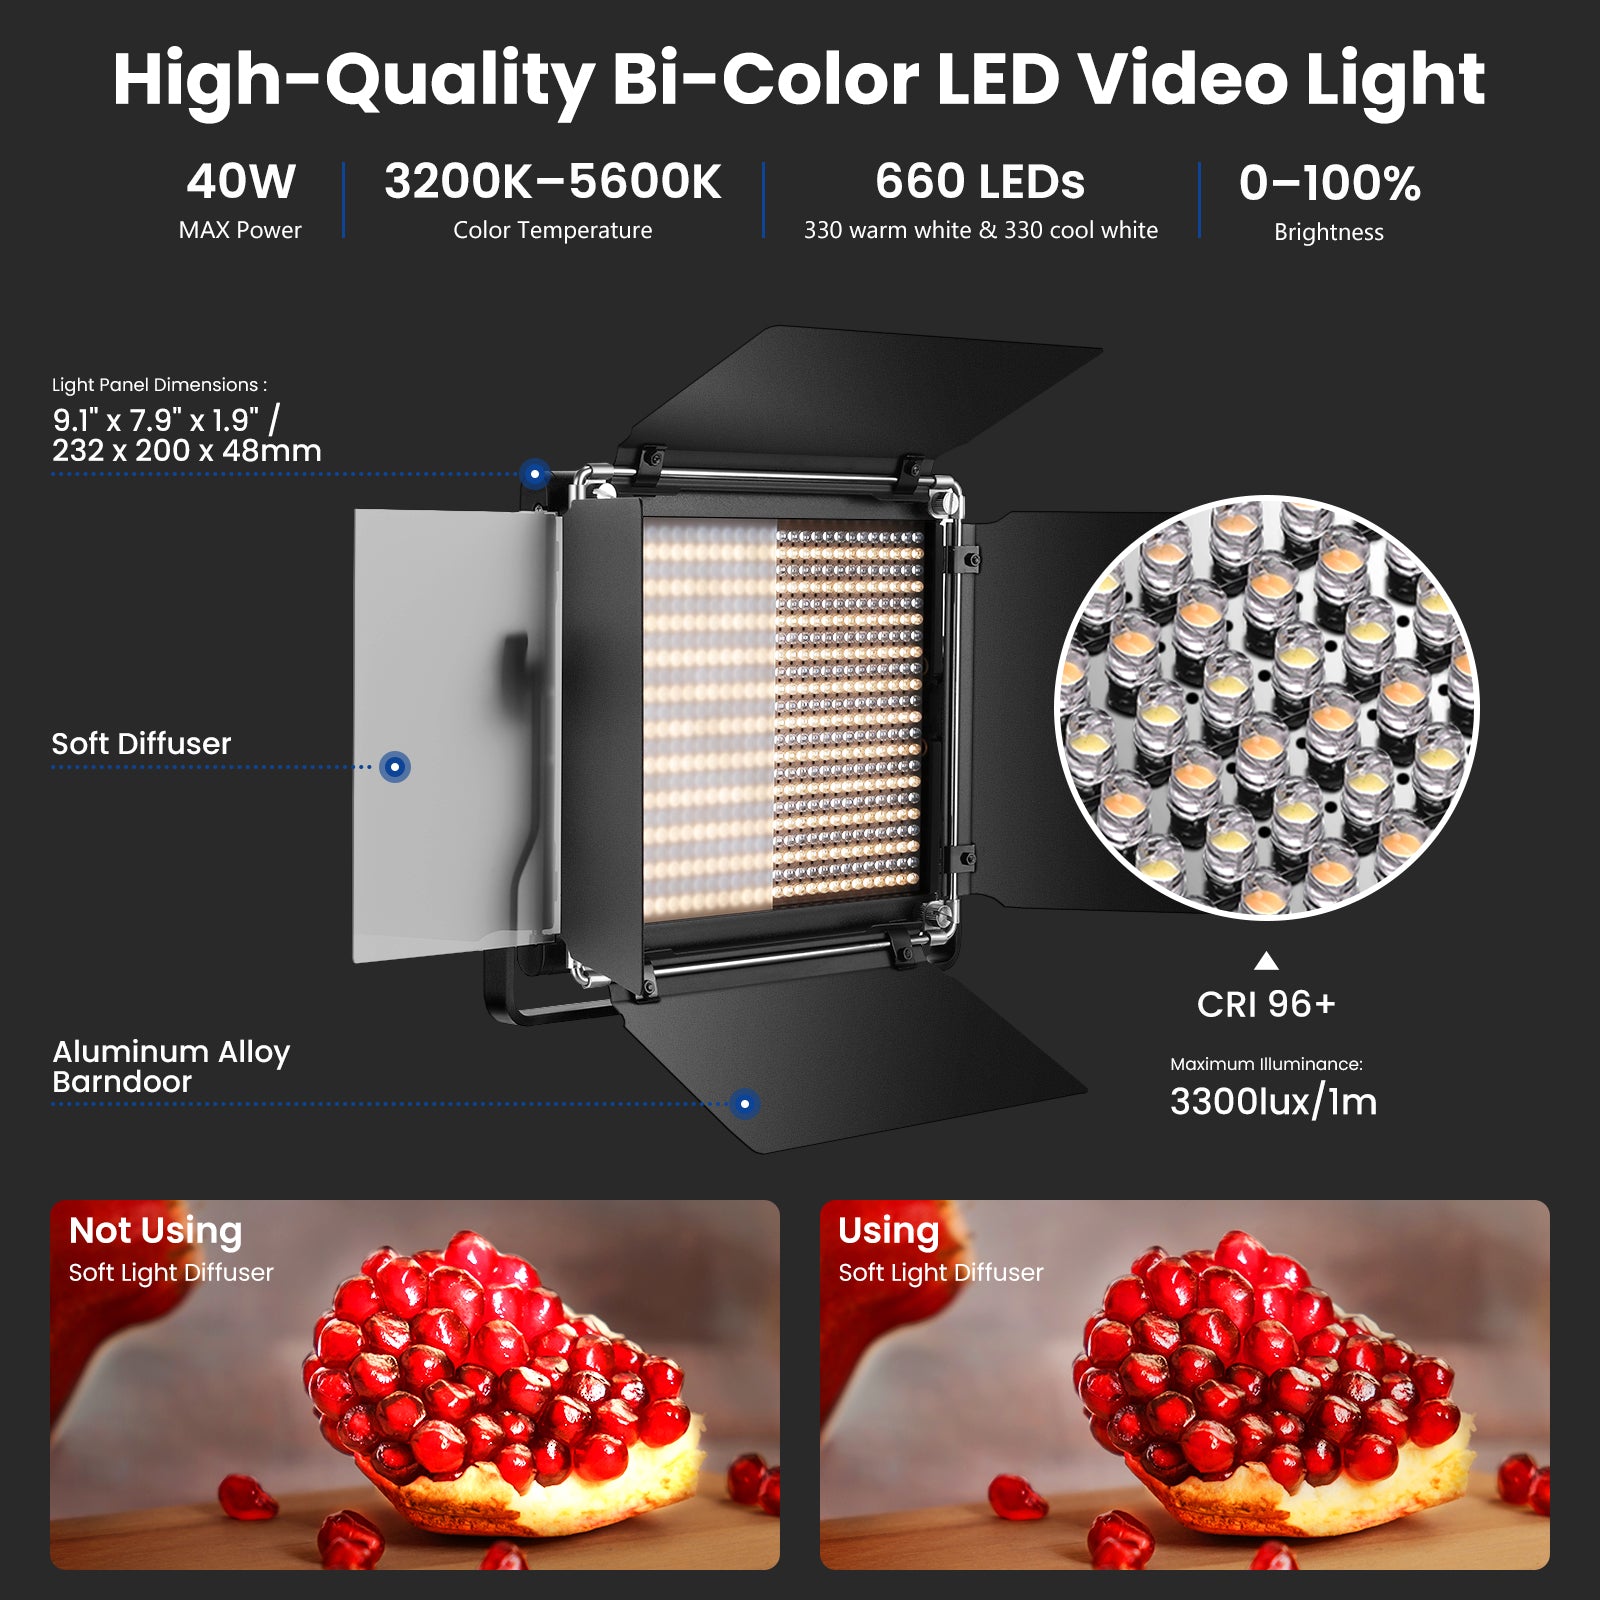 FOSITAN Lumière vidéo LED 2 Kit d'Eclairage Bi-Couleur Réglable 3200K-5600K  13 * 20cm Panneau Lumière avec Support de trépied pour Photo Studio Vidéo   Extérieure (avec Batterie de Stockage)